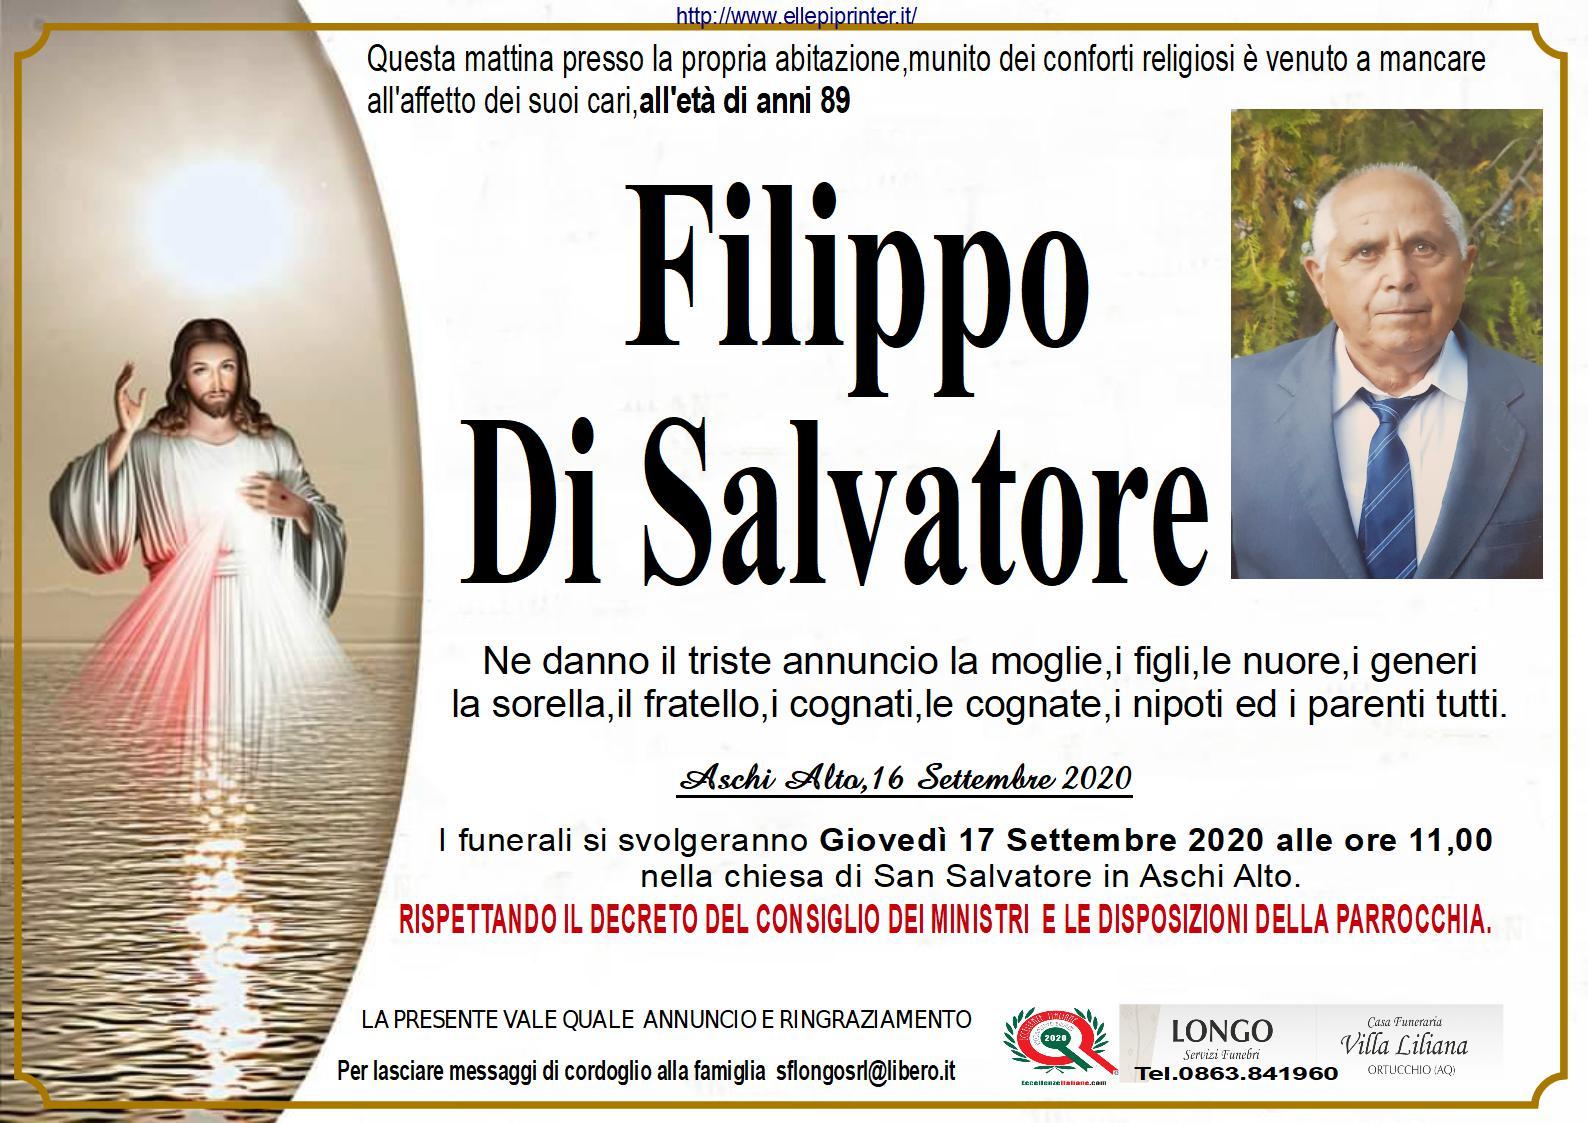 Filippo Di Salvatore - MarsicaLive